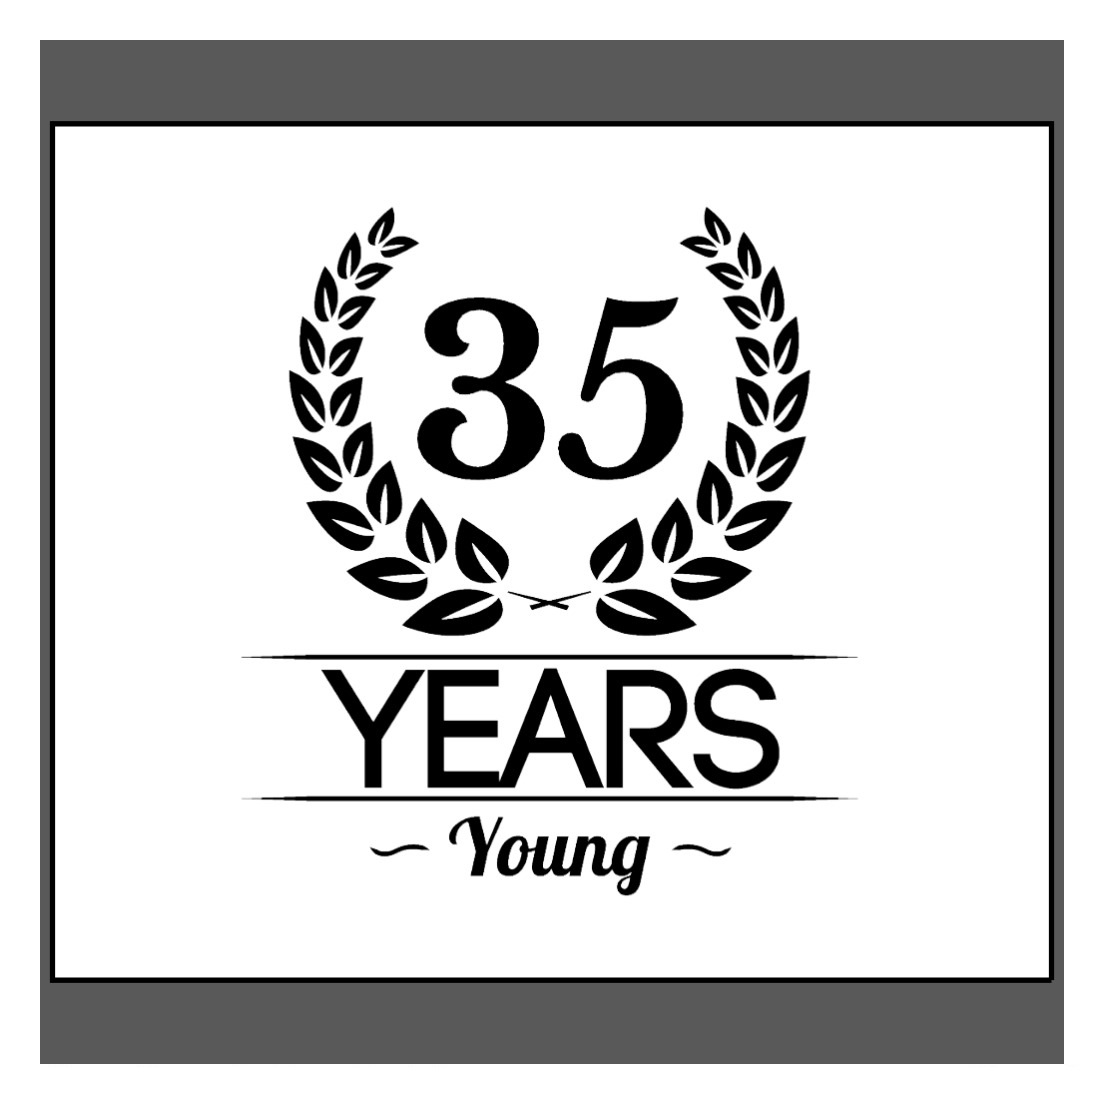 35_years_young_t_shirts-rb7a76fda307a4e238c8244af262b2c15_f0yux_1024.jpg